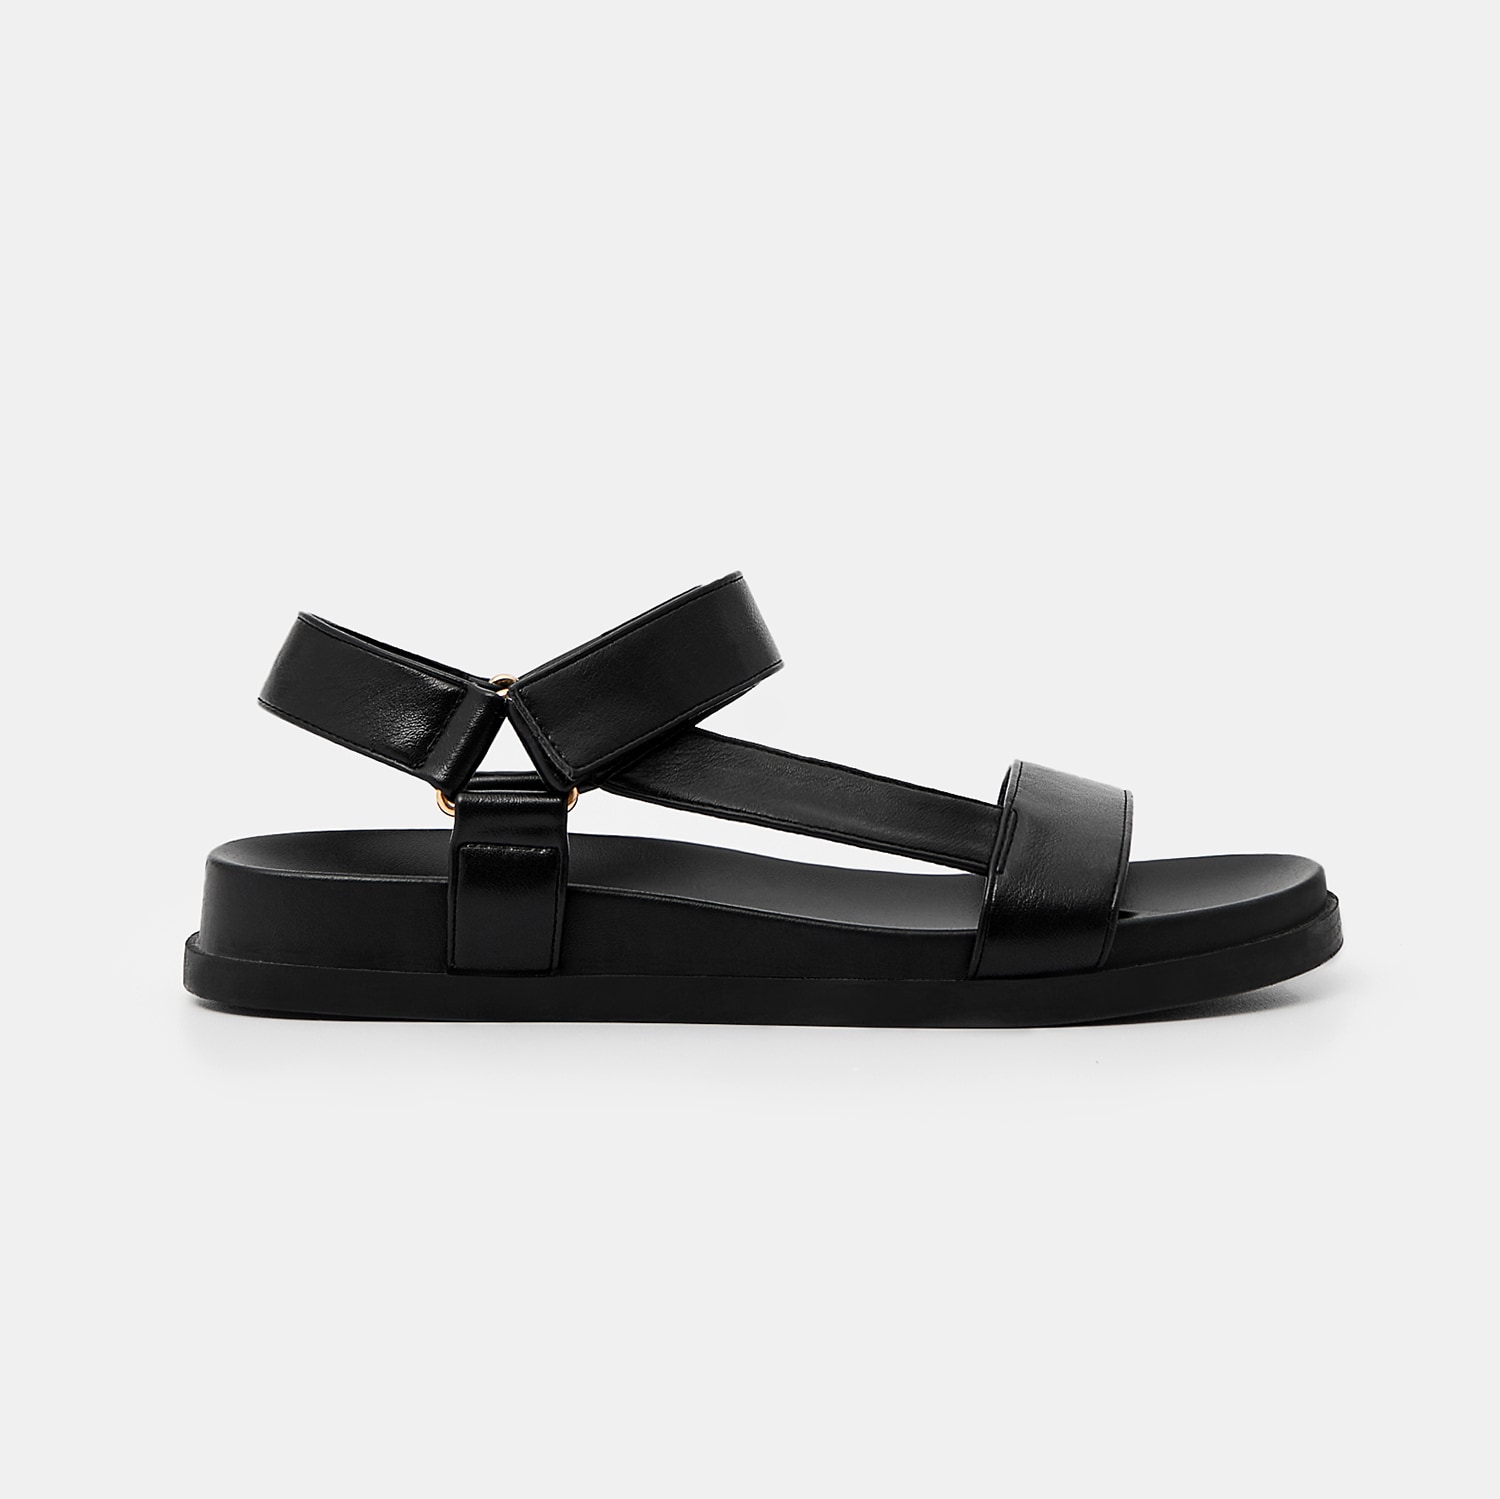 Mohito - Sandale cu platformă - Negru